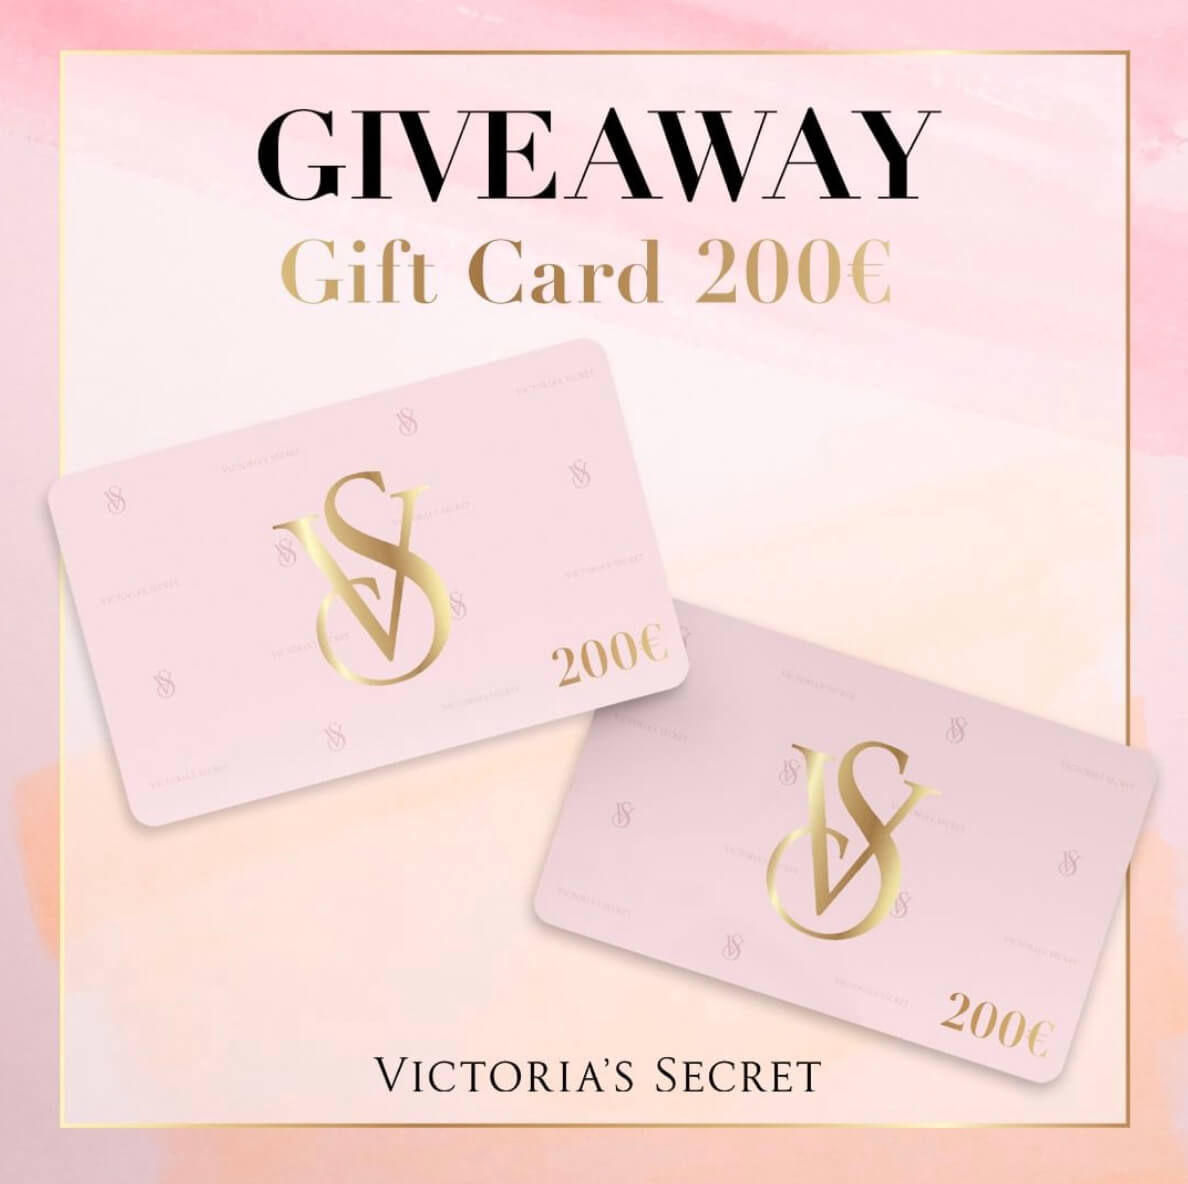 giveaway victoria's secret vinci gift card da €200